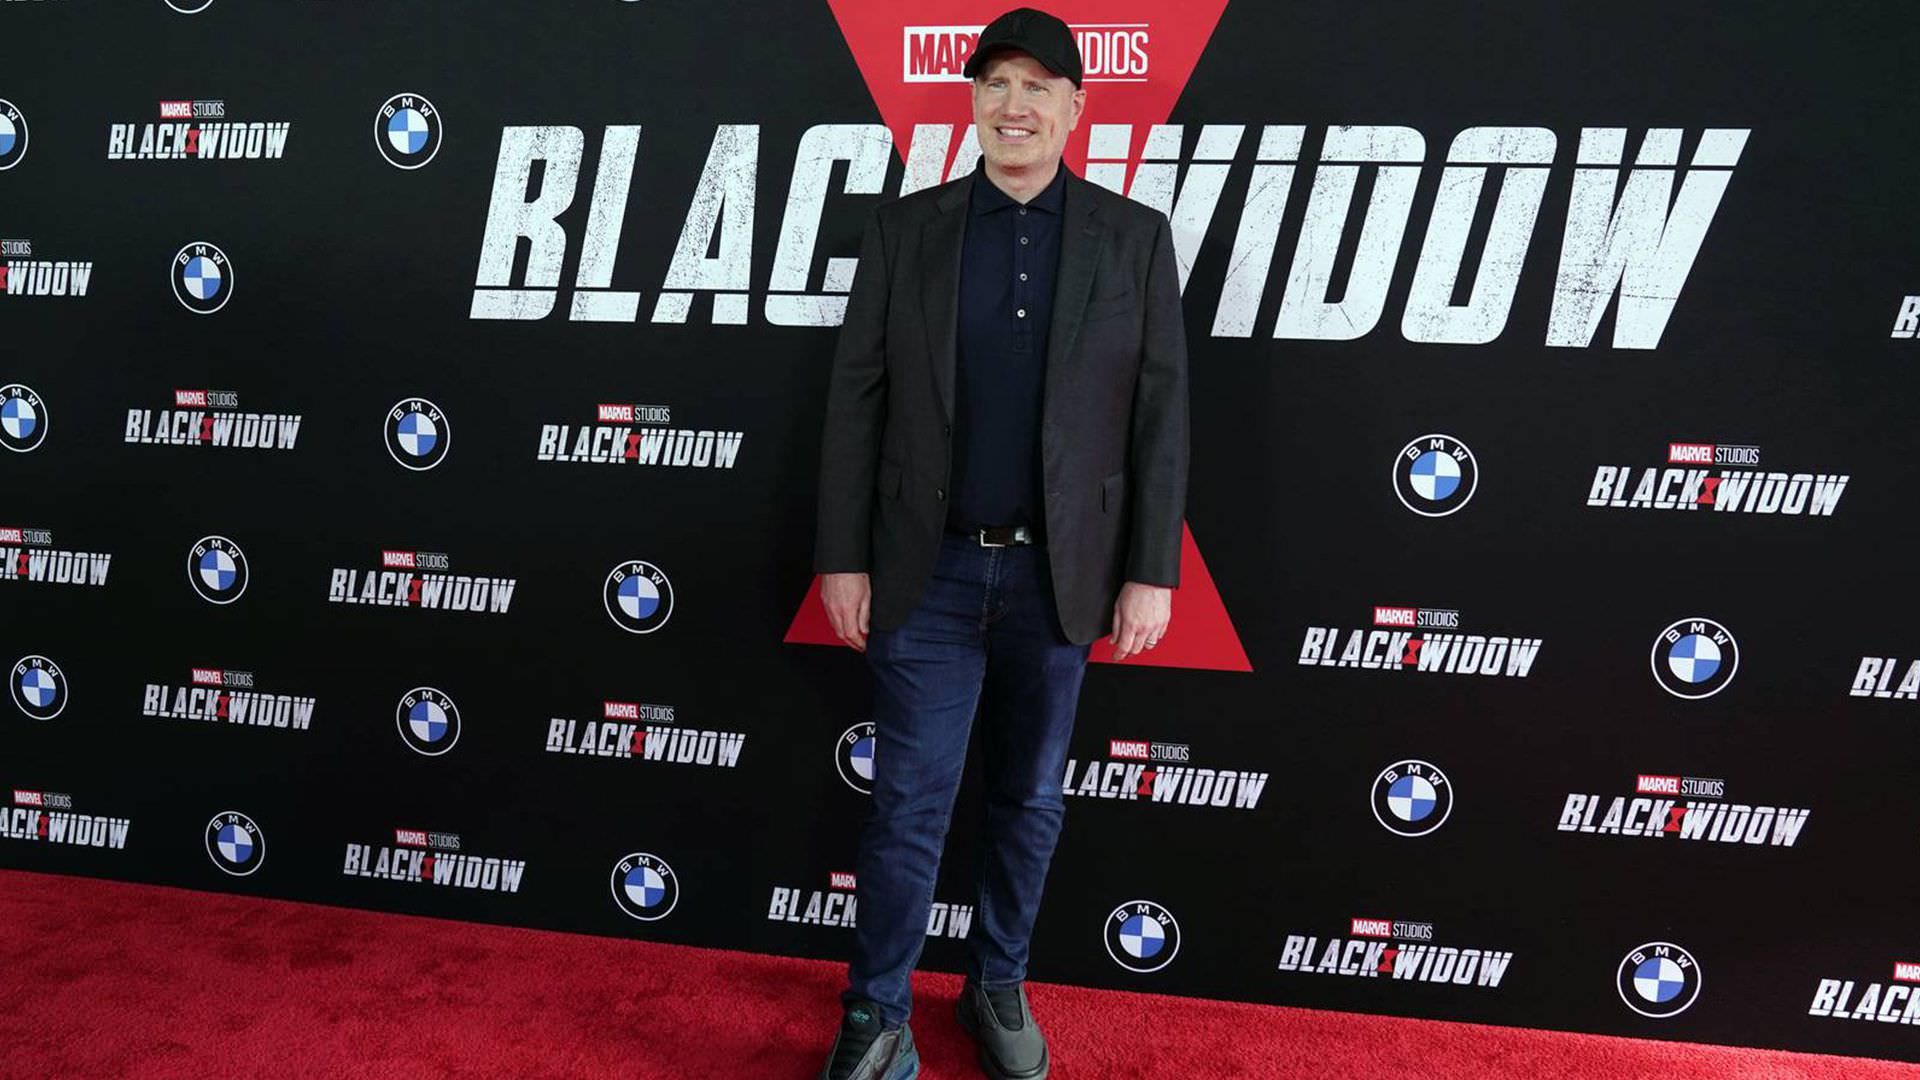 خشم کوین فایگی از تصمیم دیزنی برای پخش آنلاین فیلم Black Widow